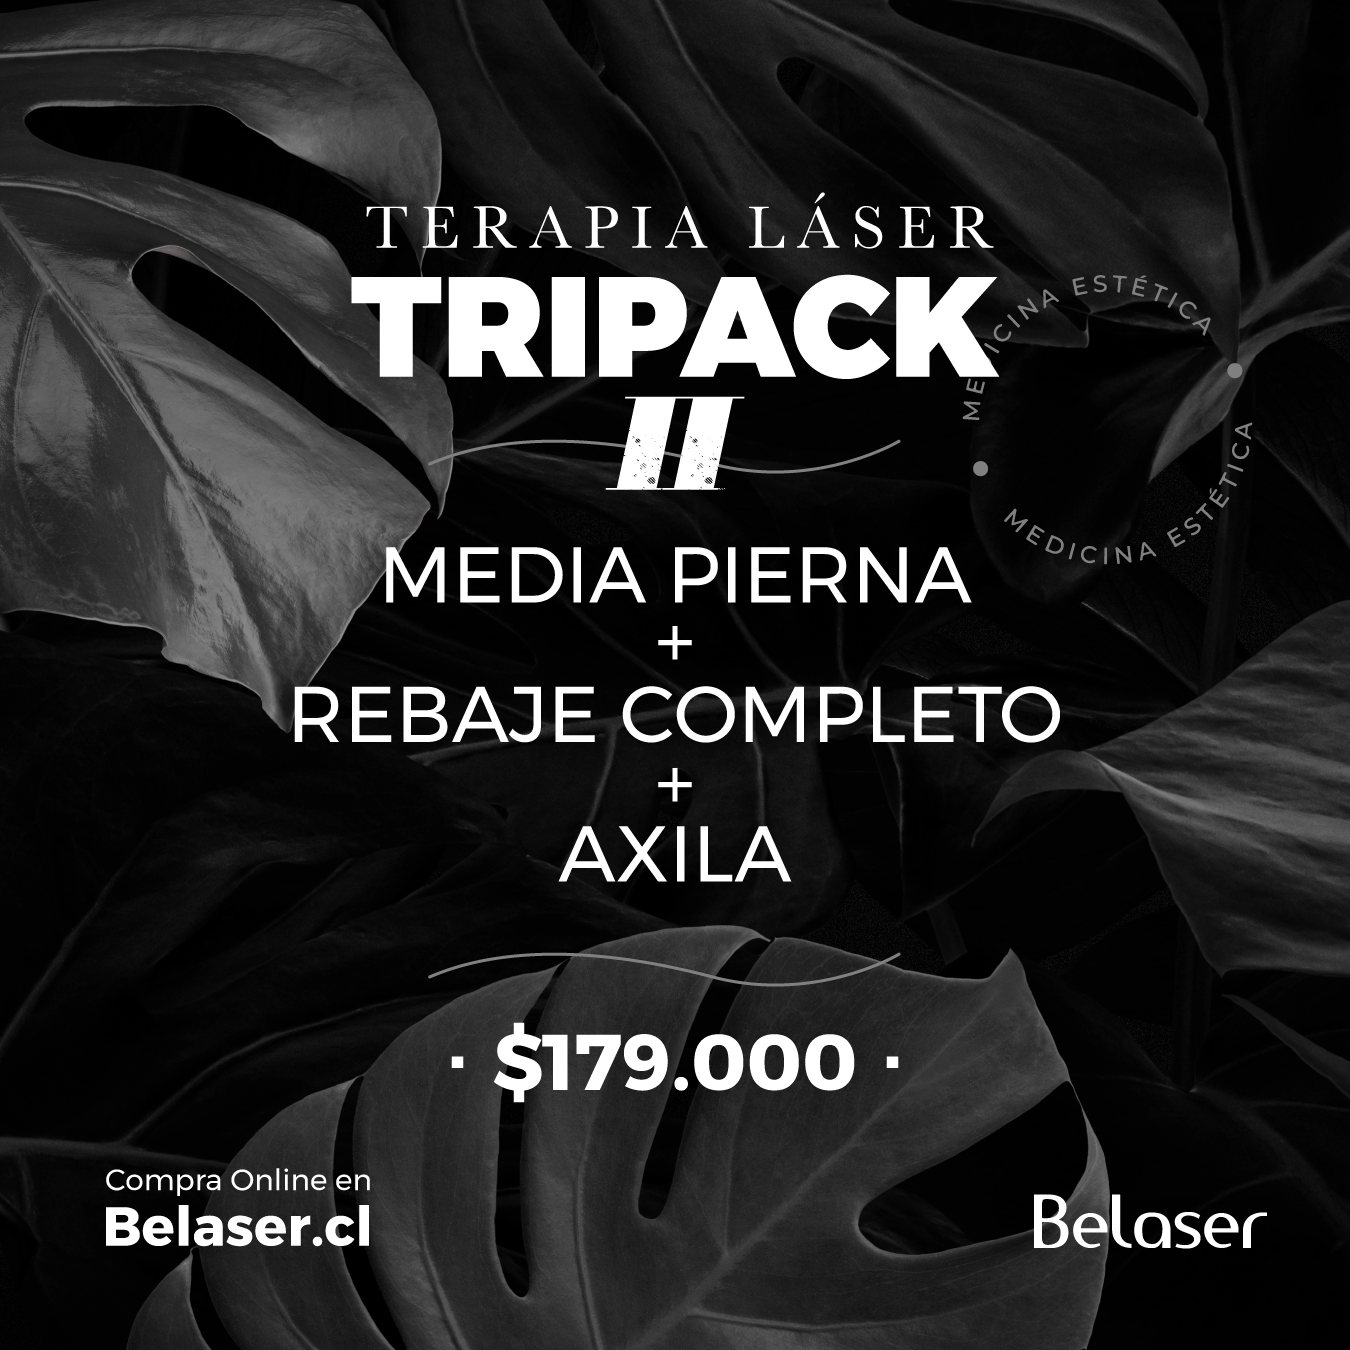 Tri Pack 2 : Media Pierna + Rebaje Completo + Axila